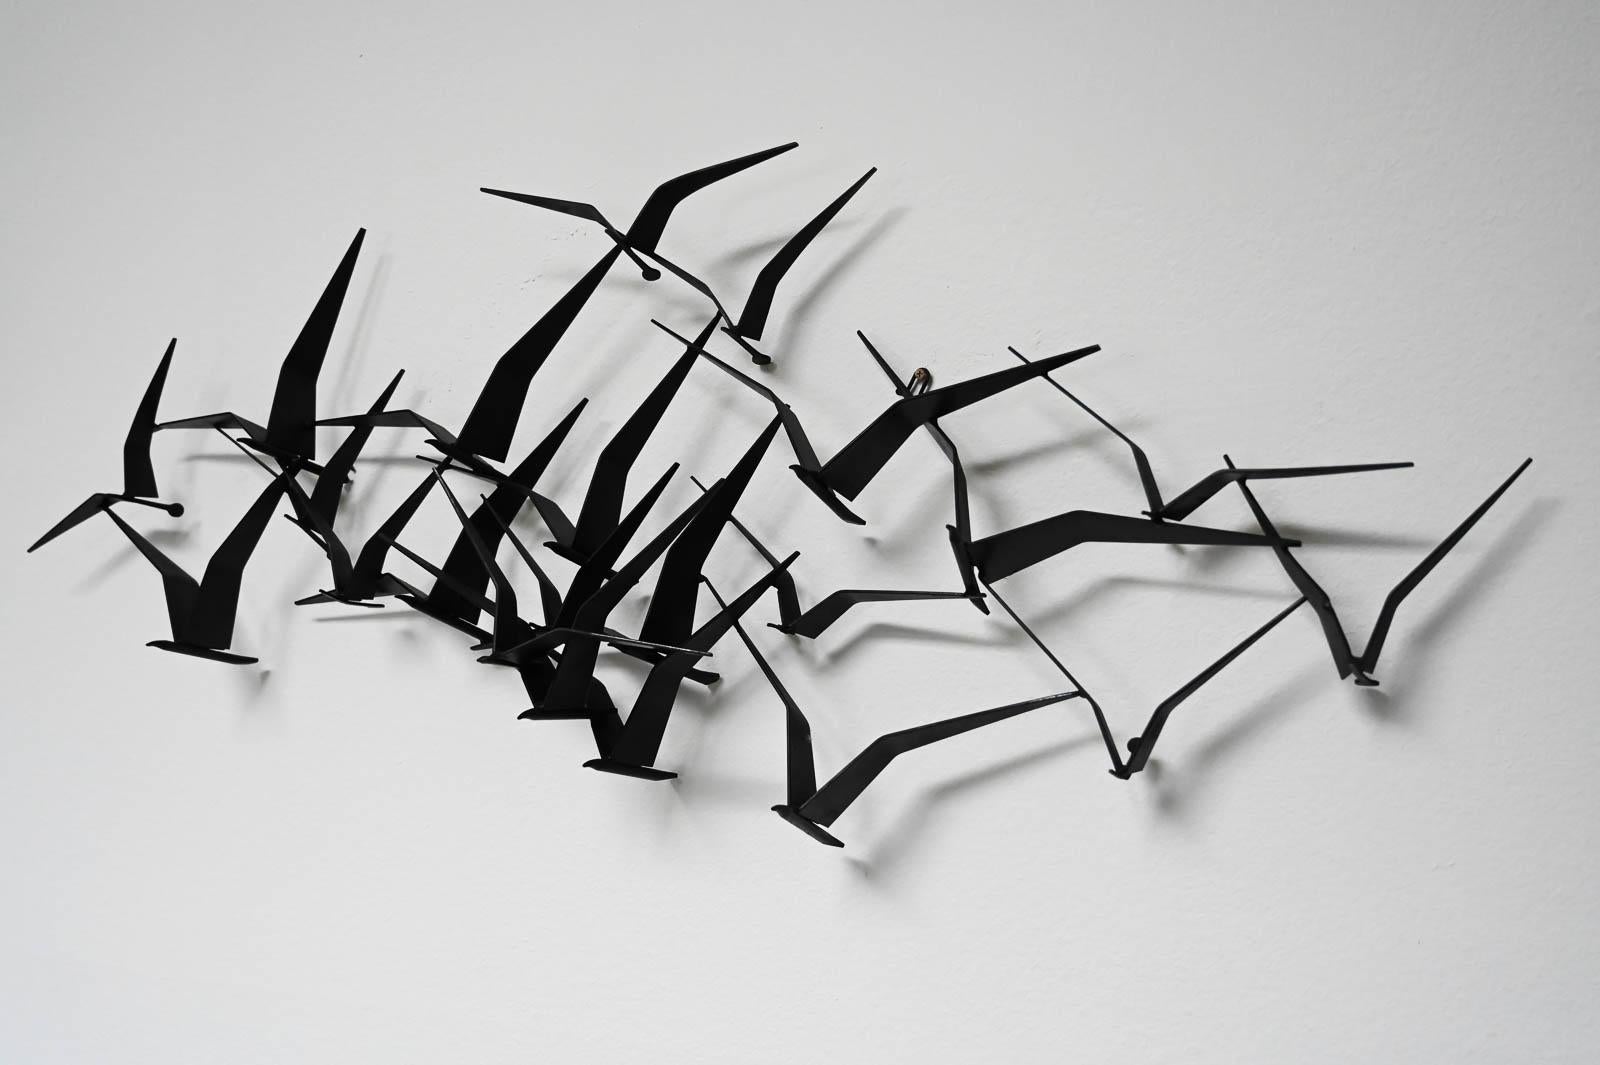 birds in flight sculpture